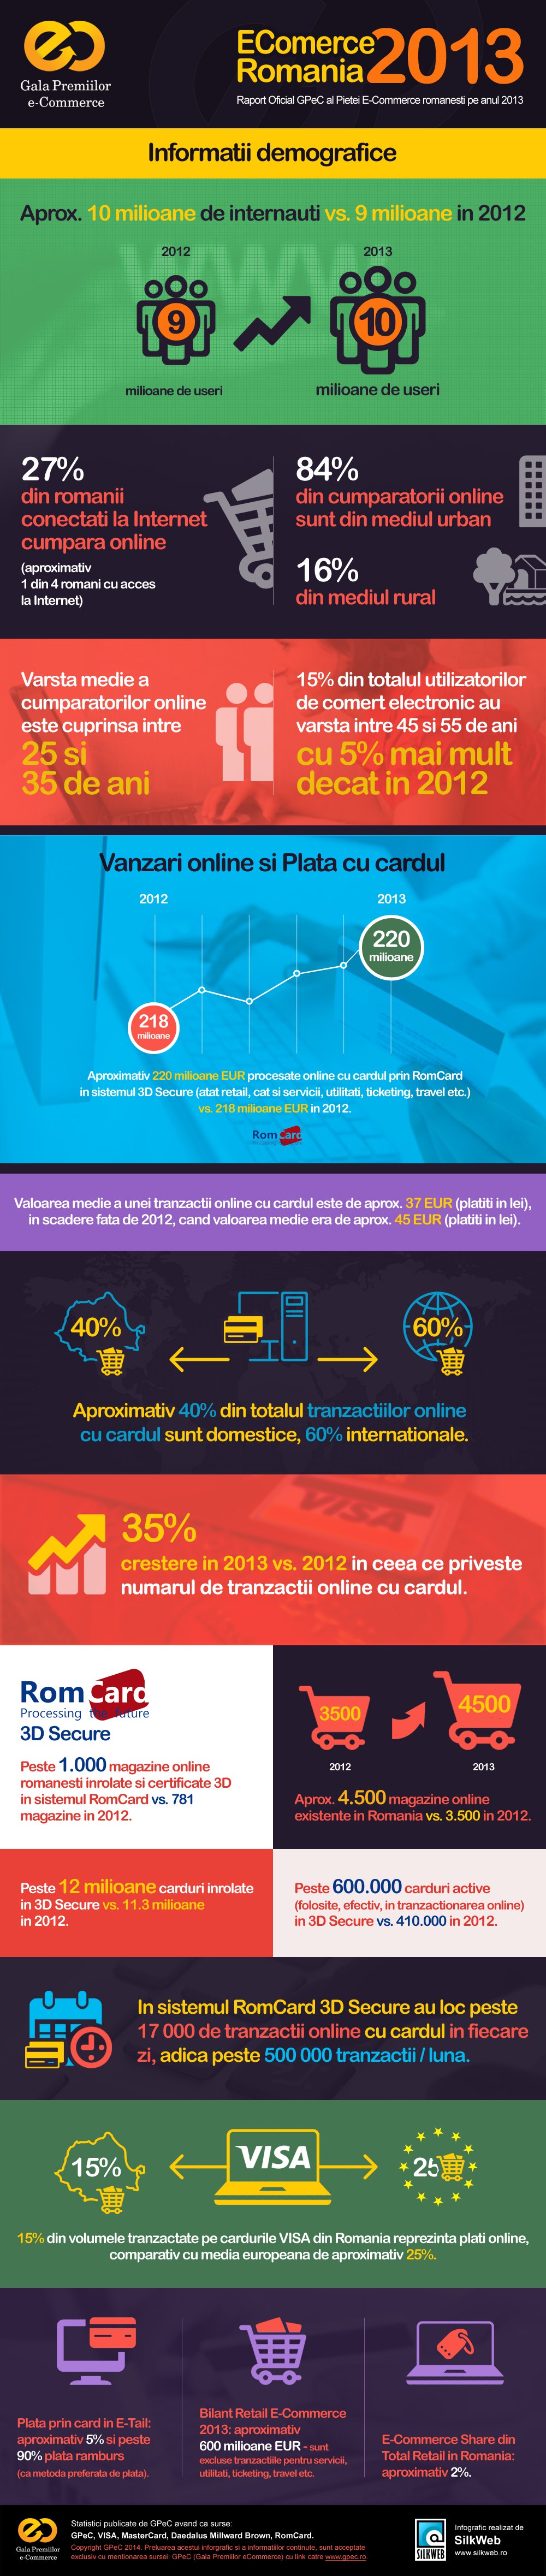 infografic ecommerce romania 2013